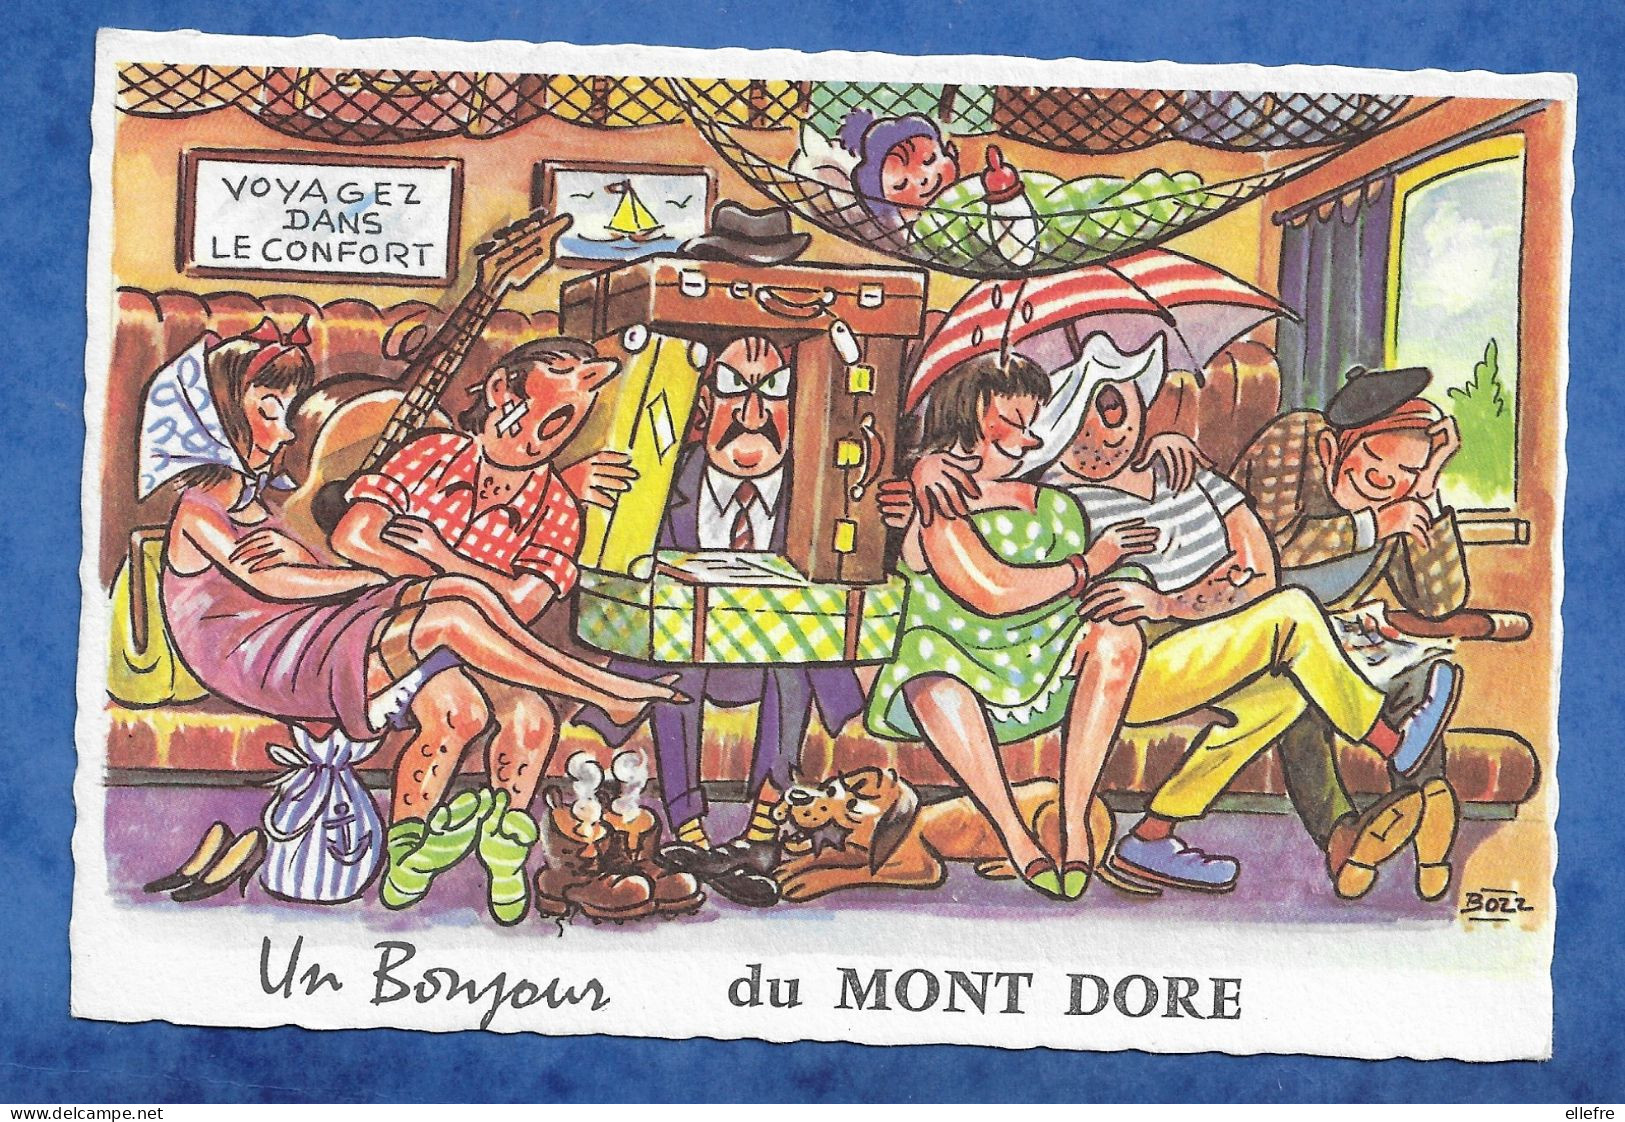 CPSM Un Bonjour Du Mont Dore 63 - Illustrateur BOZZ - Humour Compartiment De Train - MD Paris Non écrite - Souvenir De...